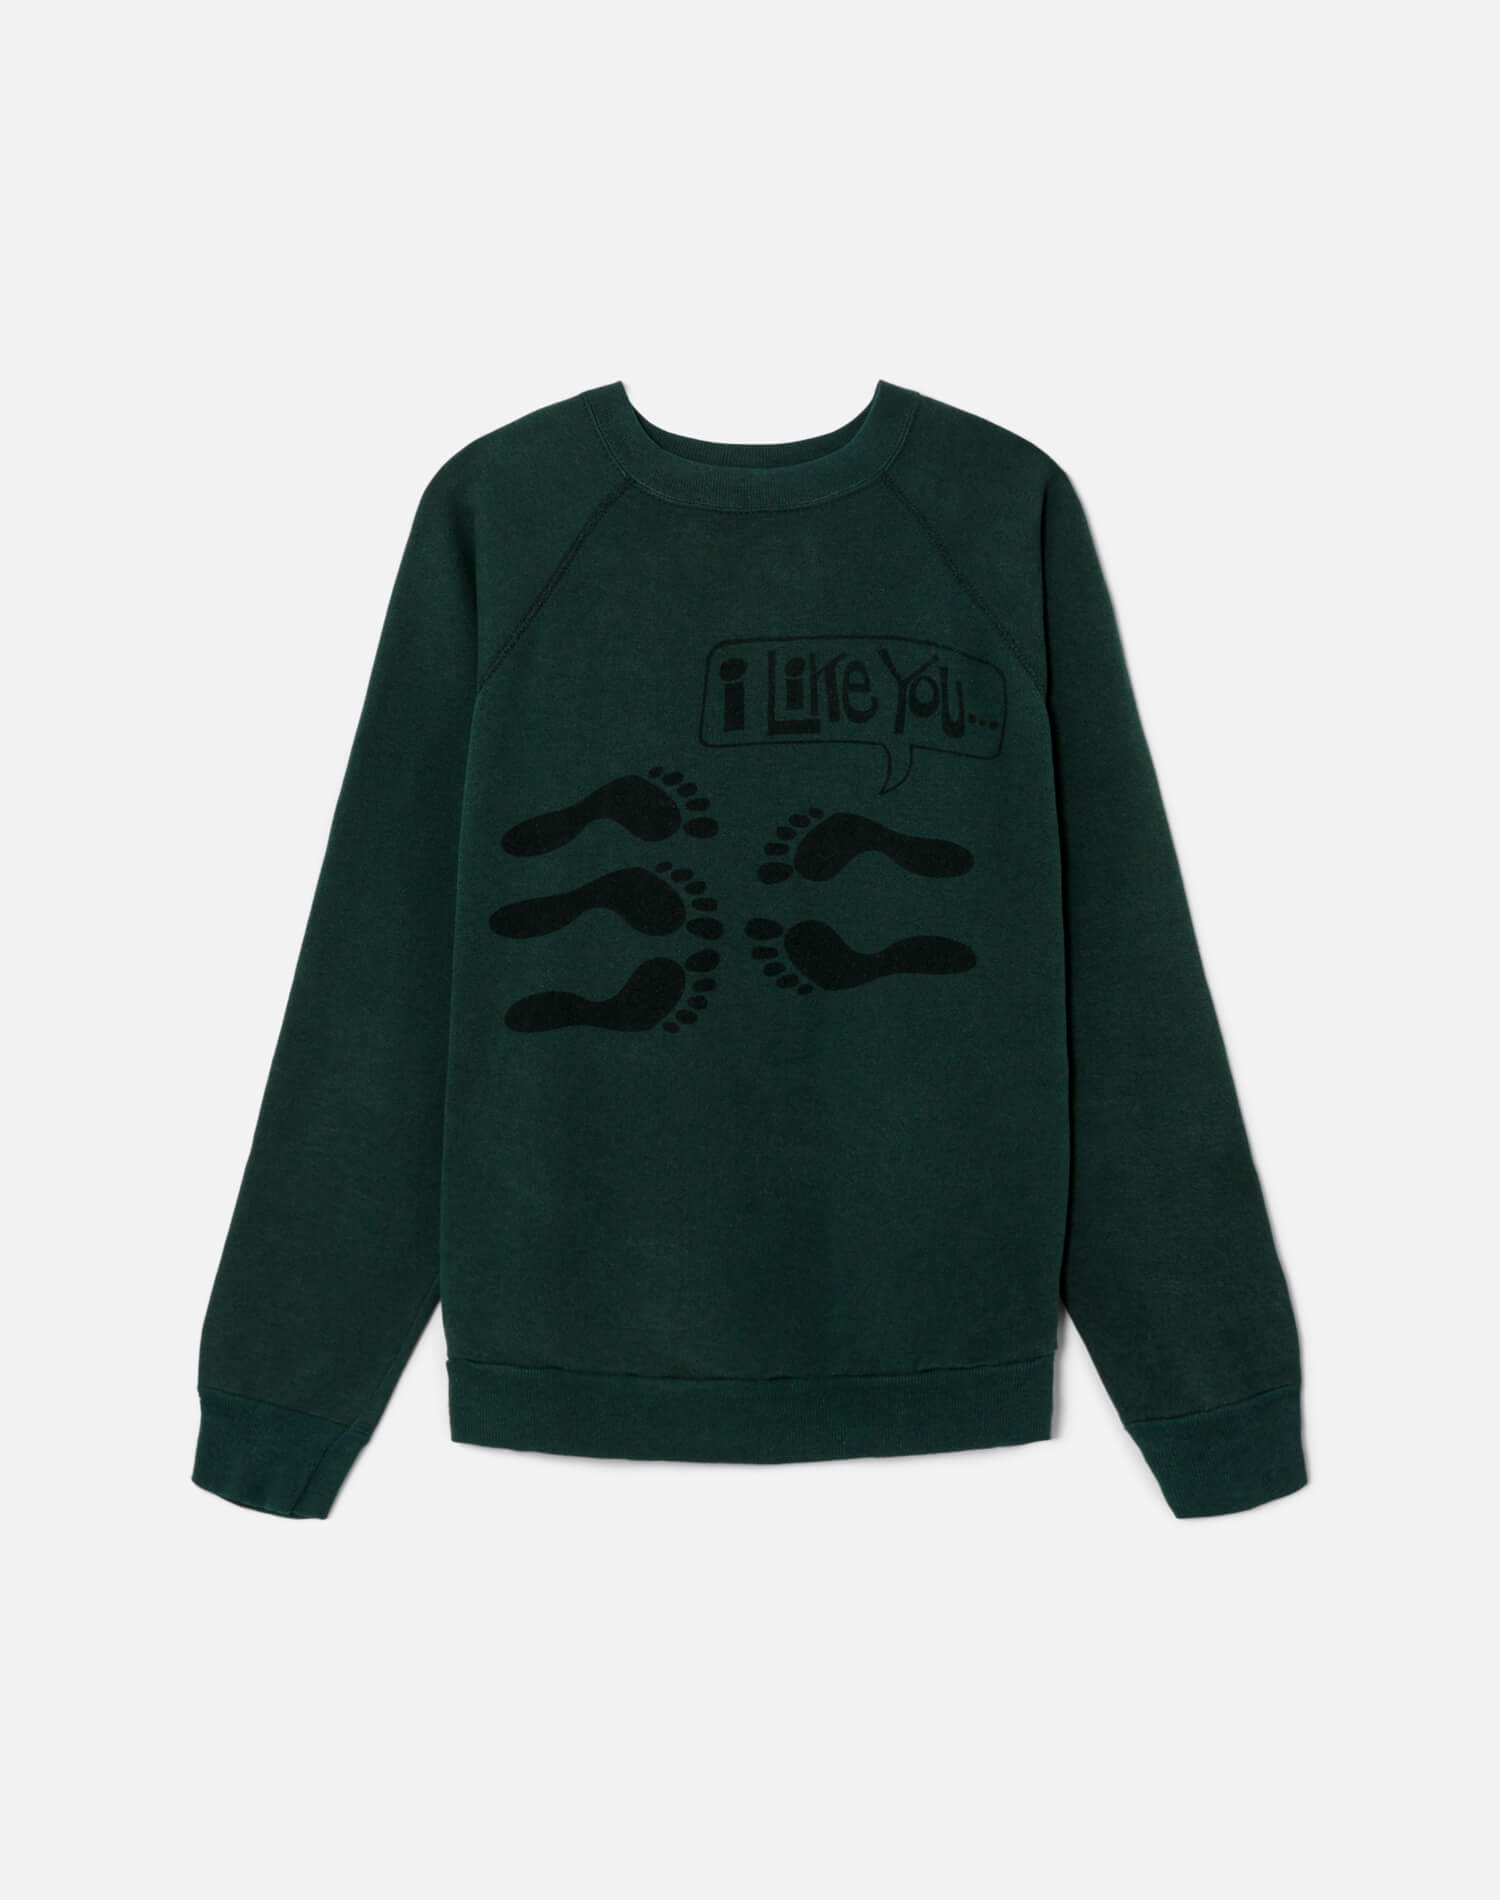 Upcycled "I Like You" Sweatshirt - Green